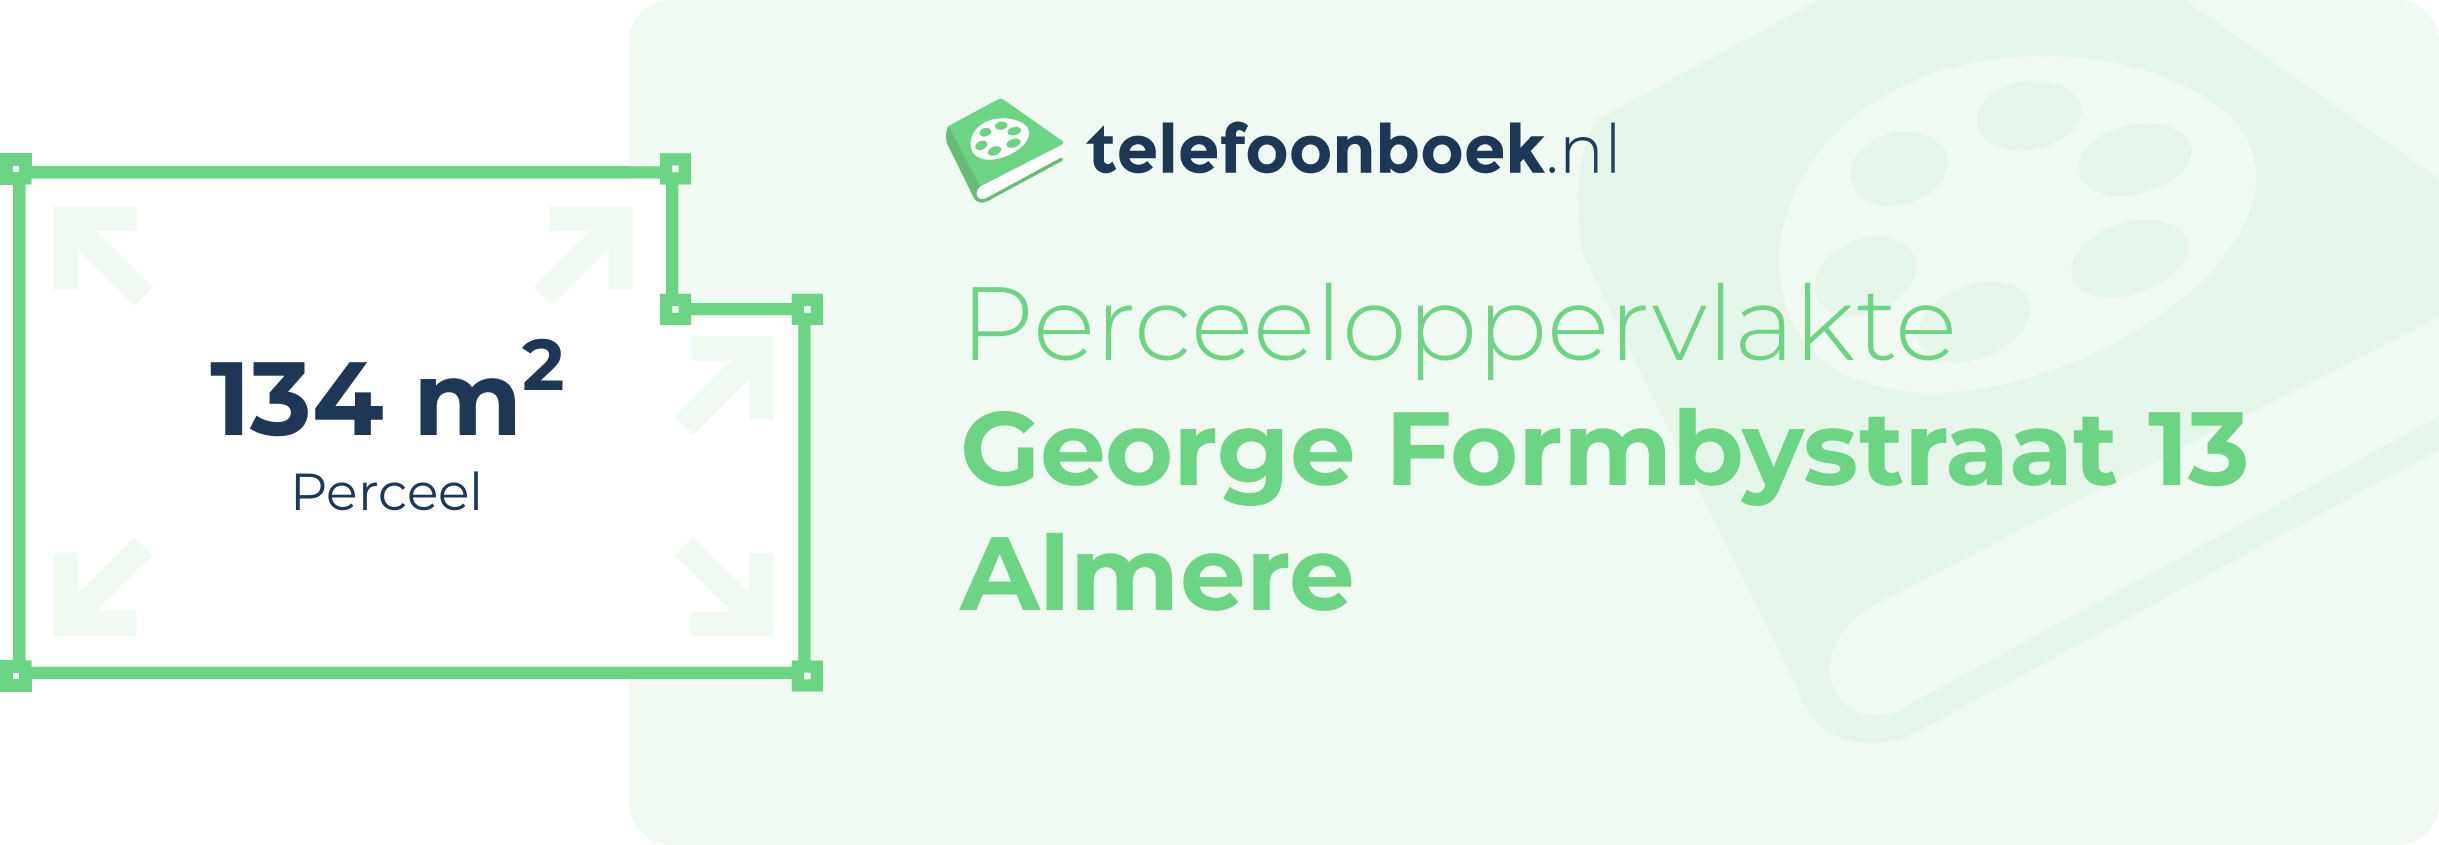 Perceeloppervlakte George Formbystraat 13 Almere